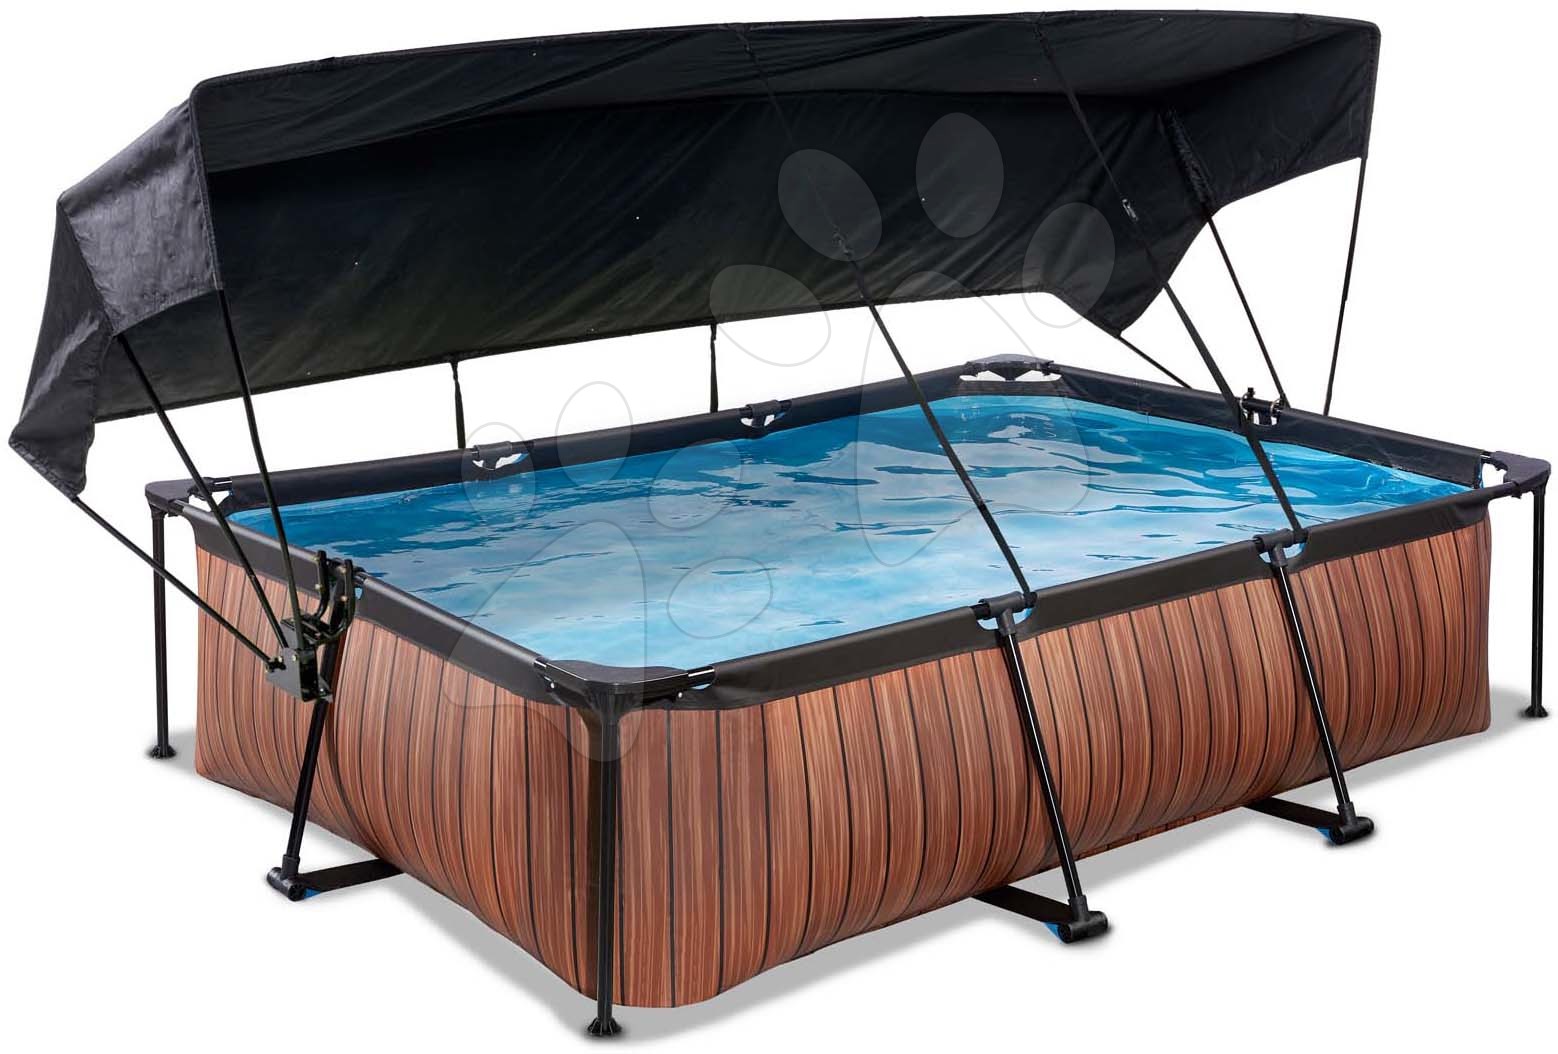 Medence napellenzővel és szivattyúval Wood pool Exit Toys acél medencekeret 300*200 cm barna 6 évtől